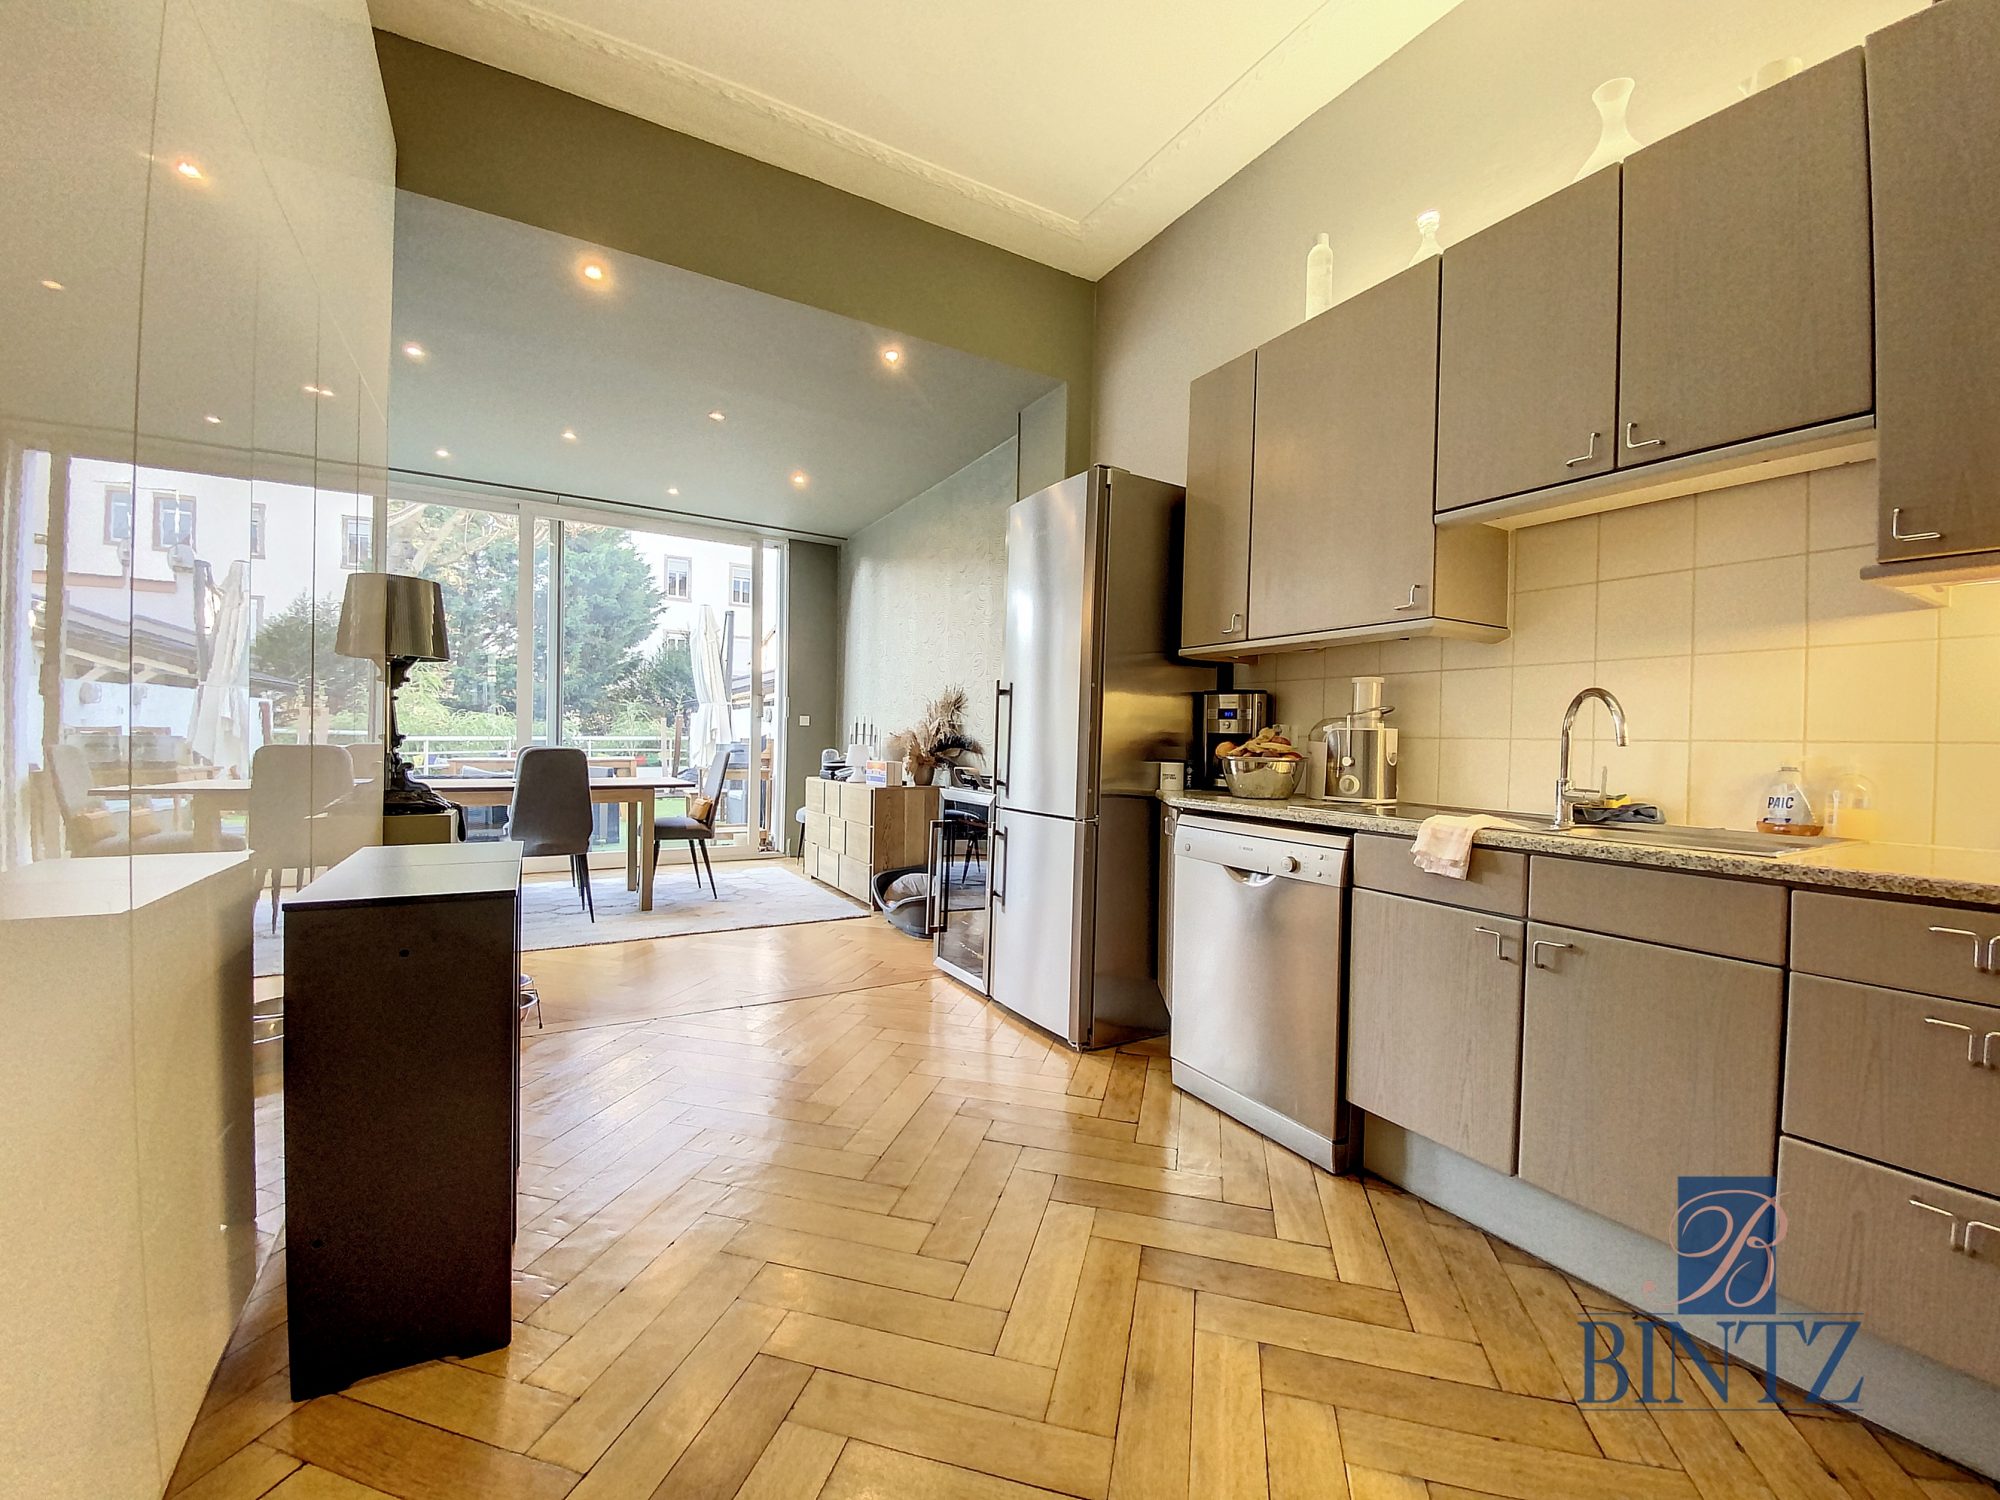 Orangerie – Appartement 2 pièces de 90m2 avec ses deux terrasse - vente immobilière - Bintz Immobilier - 5